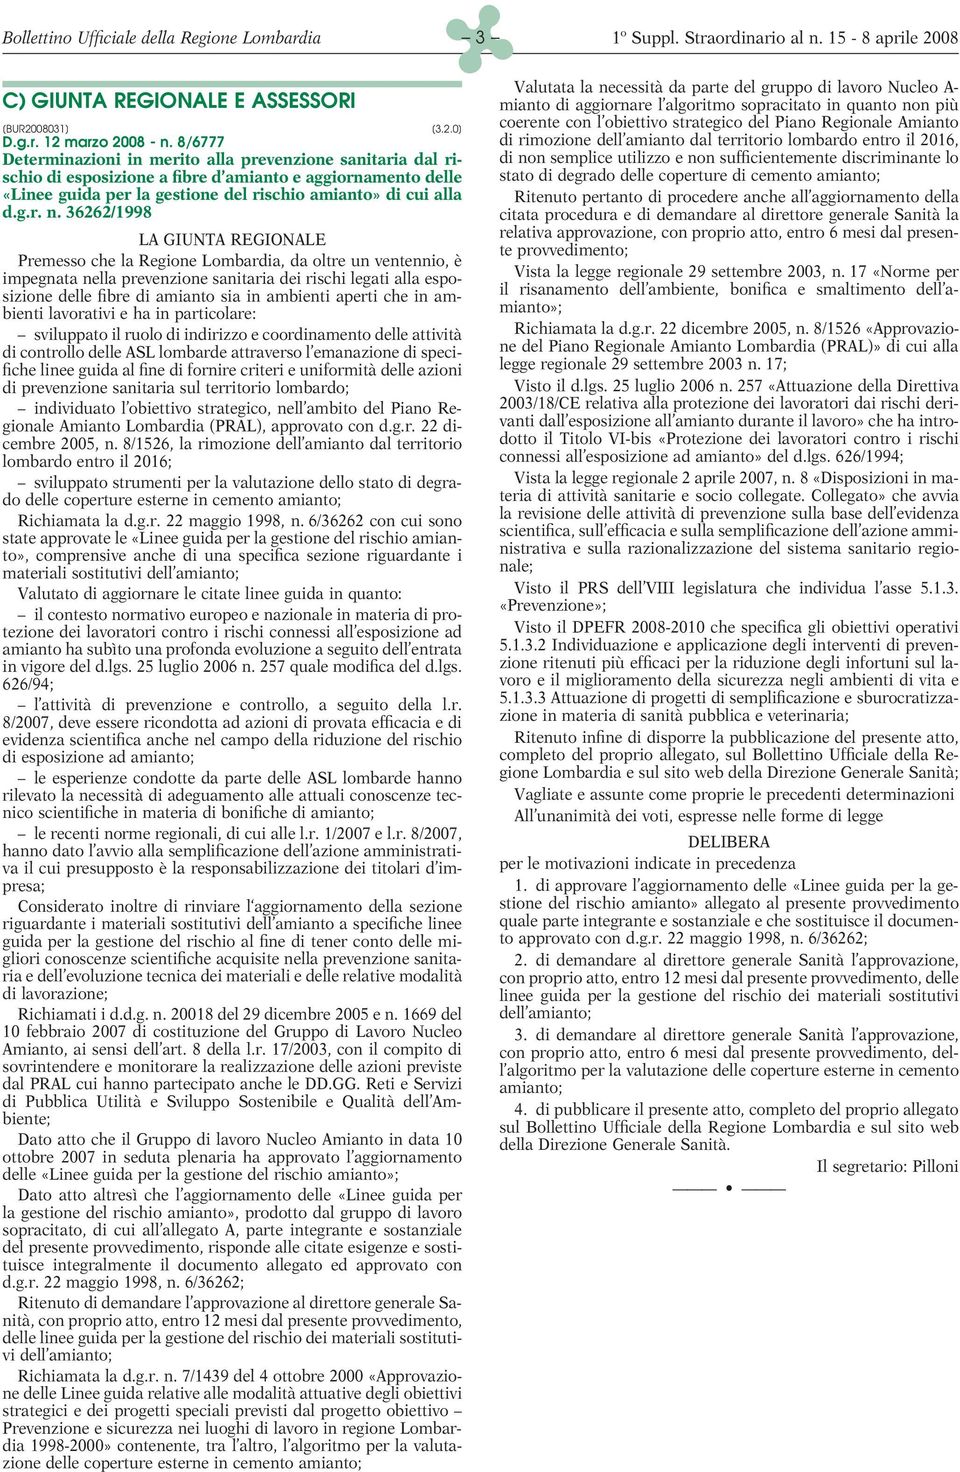 36262/1998 LA GIUNTA REGIONALE Premesso che la Regione Lombardia, da oltre un ventennio, è impegnata nella prevenzione sanitaria dei rischi legati alla esposizione delle fibre di amianto sia in